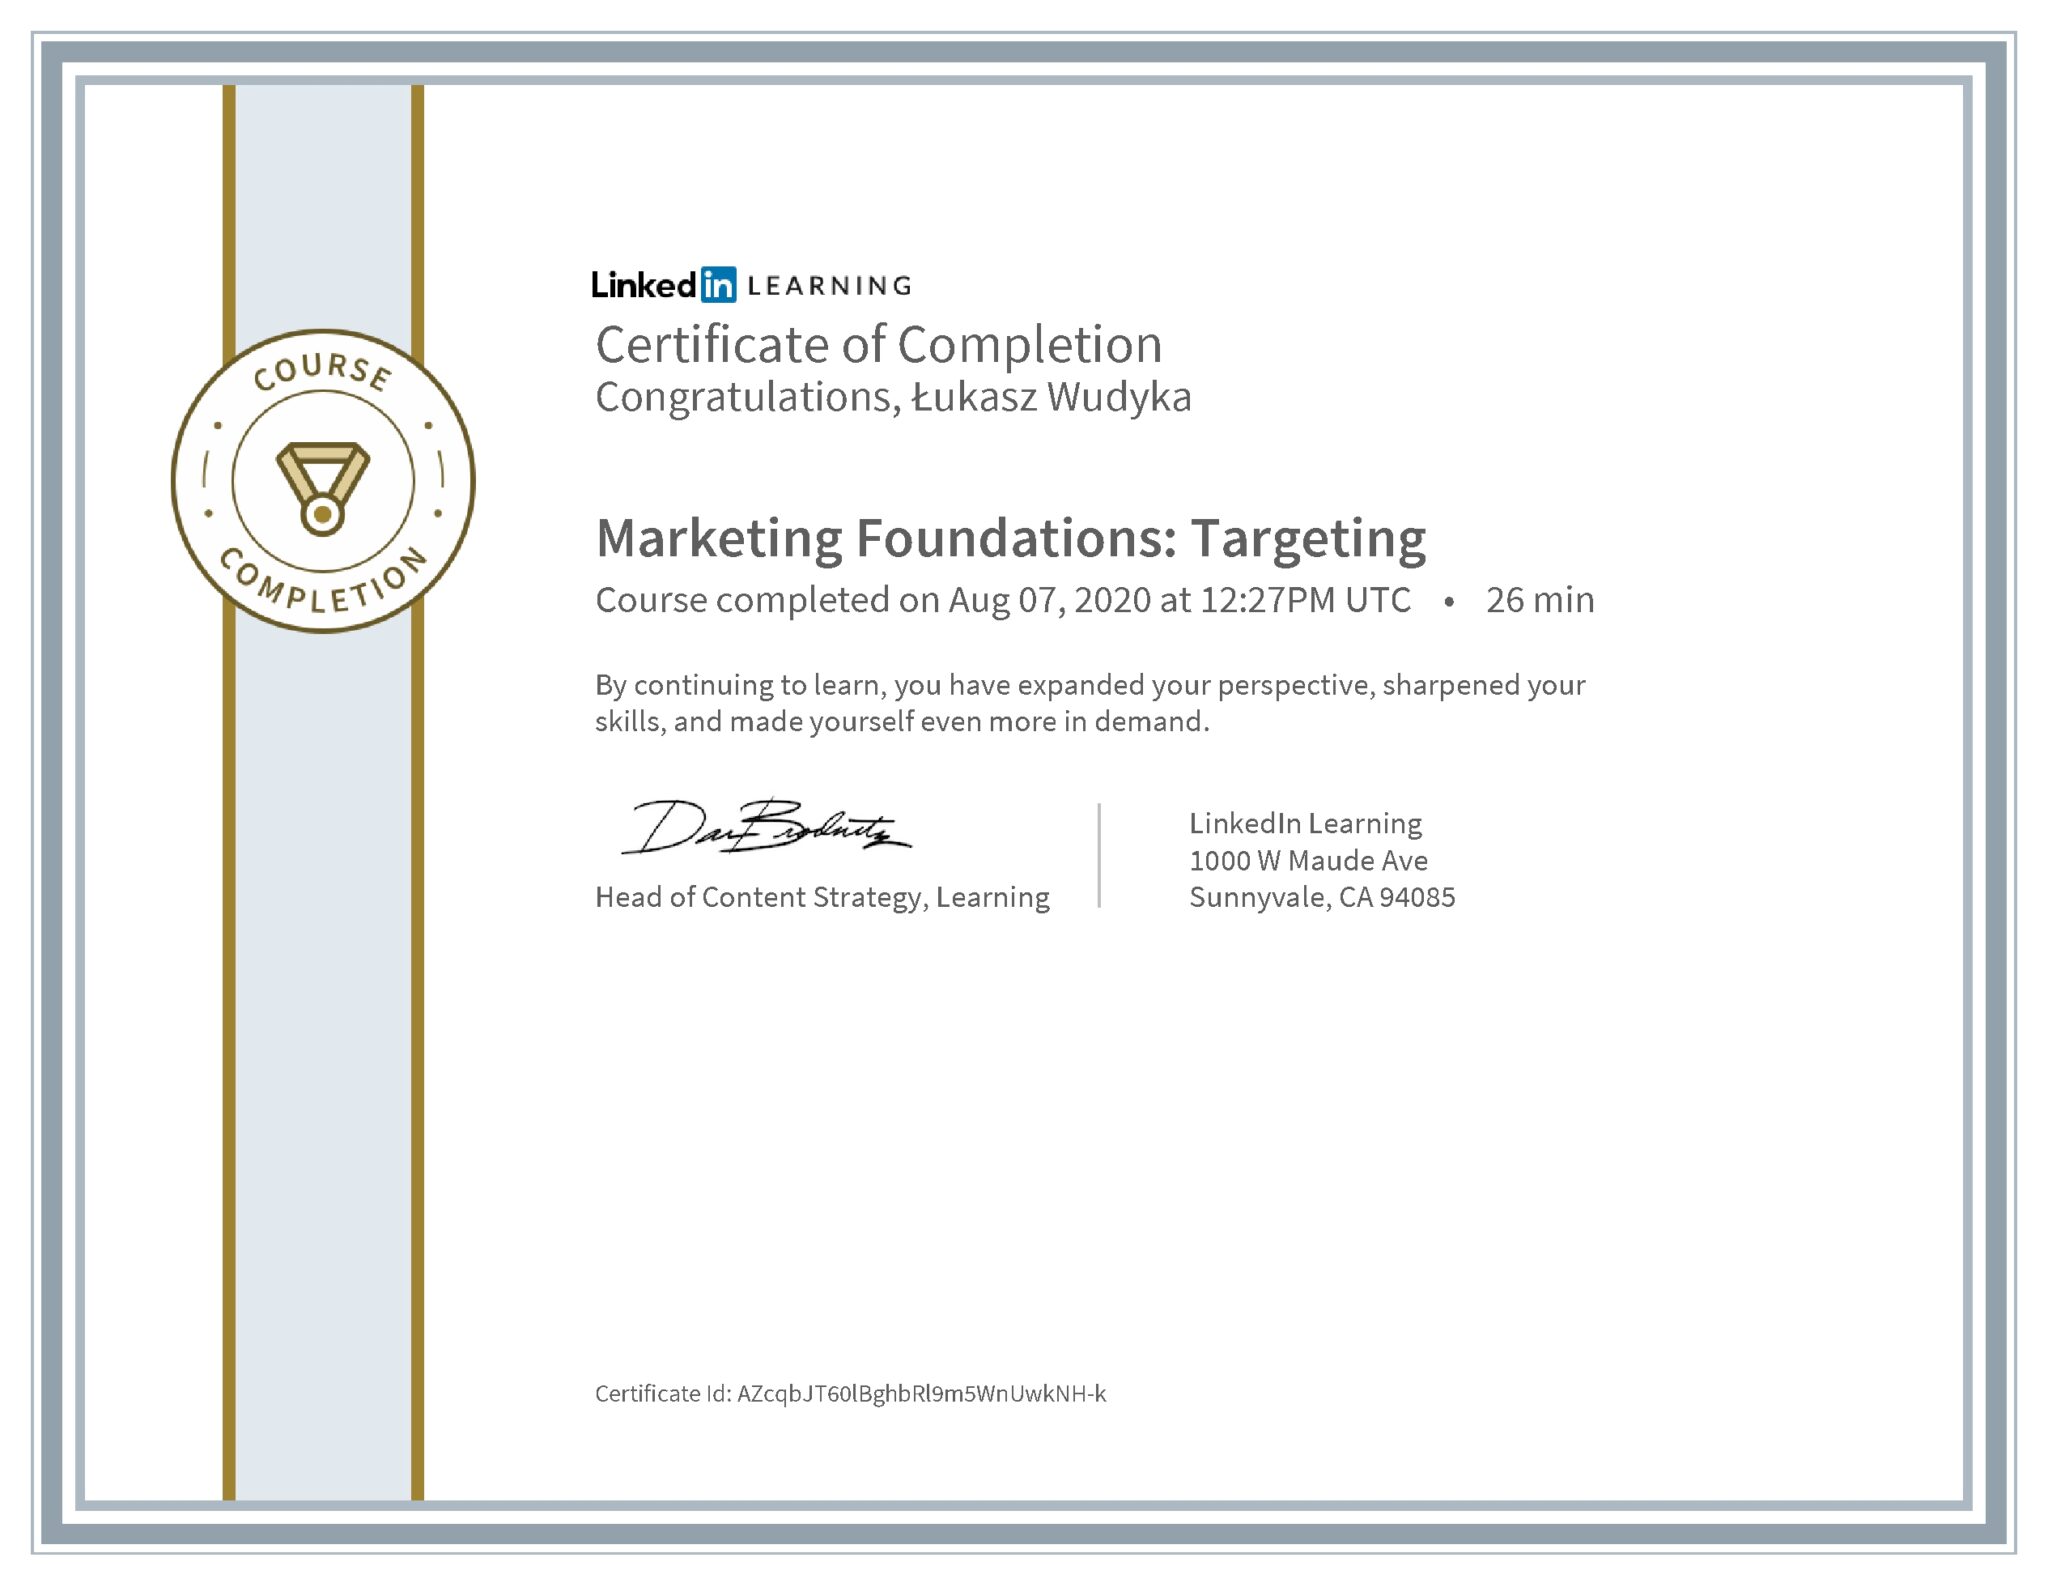 Łukasz Wudyka certyfikat LinkedIn Marketing Foundations: Targeting